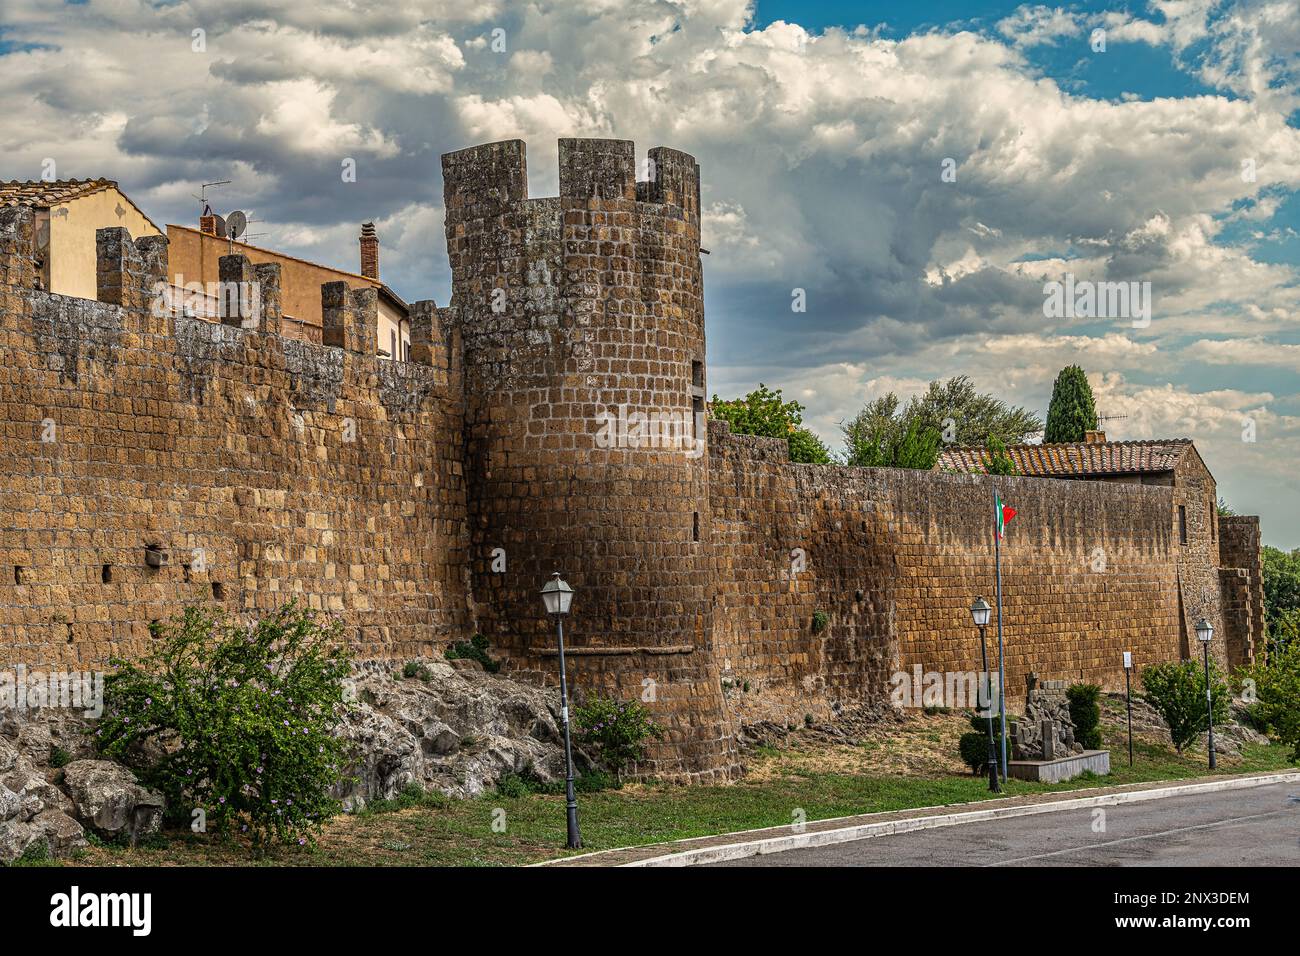 Die mittelalterlichen Mauern mit den runden und zerkleinerten Türmen der antiken Stadt Toskanien. Toskanien, Provinz Viterbo, Latium, Italien, Europa Stockfoto